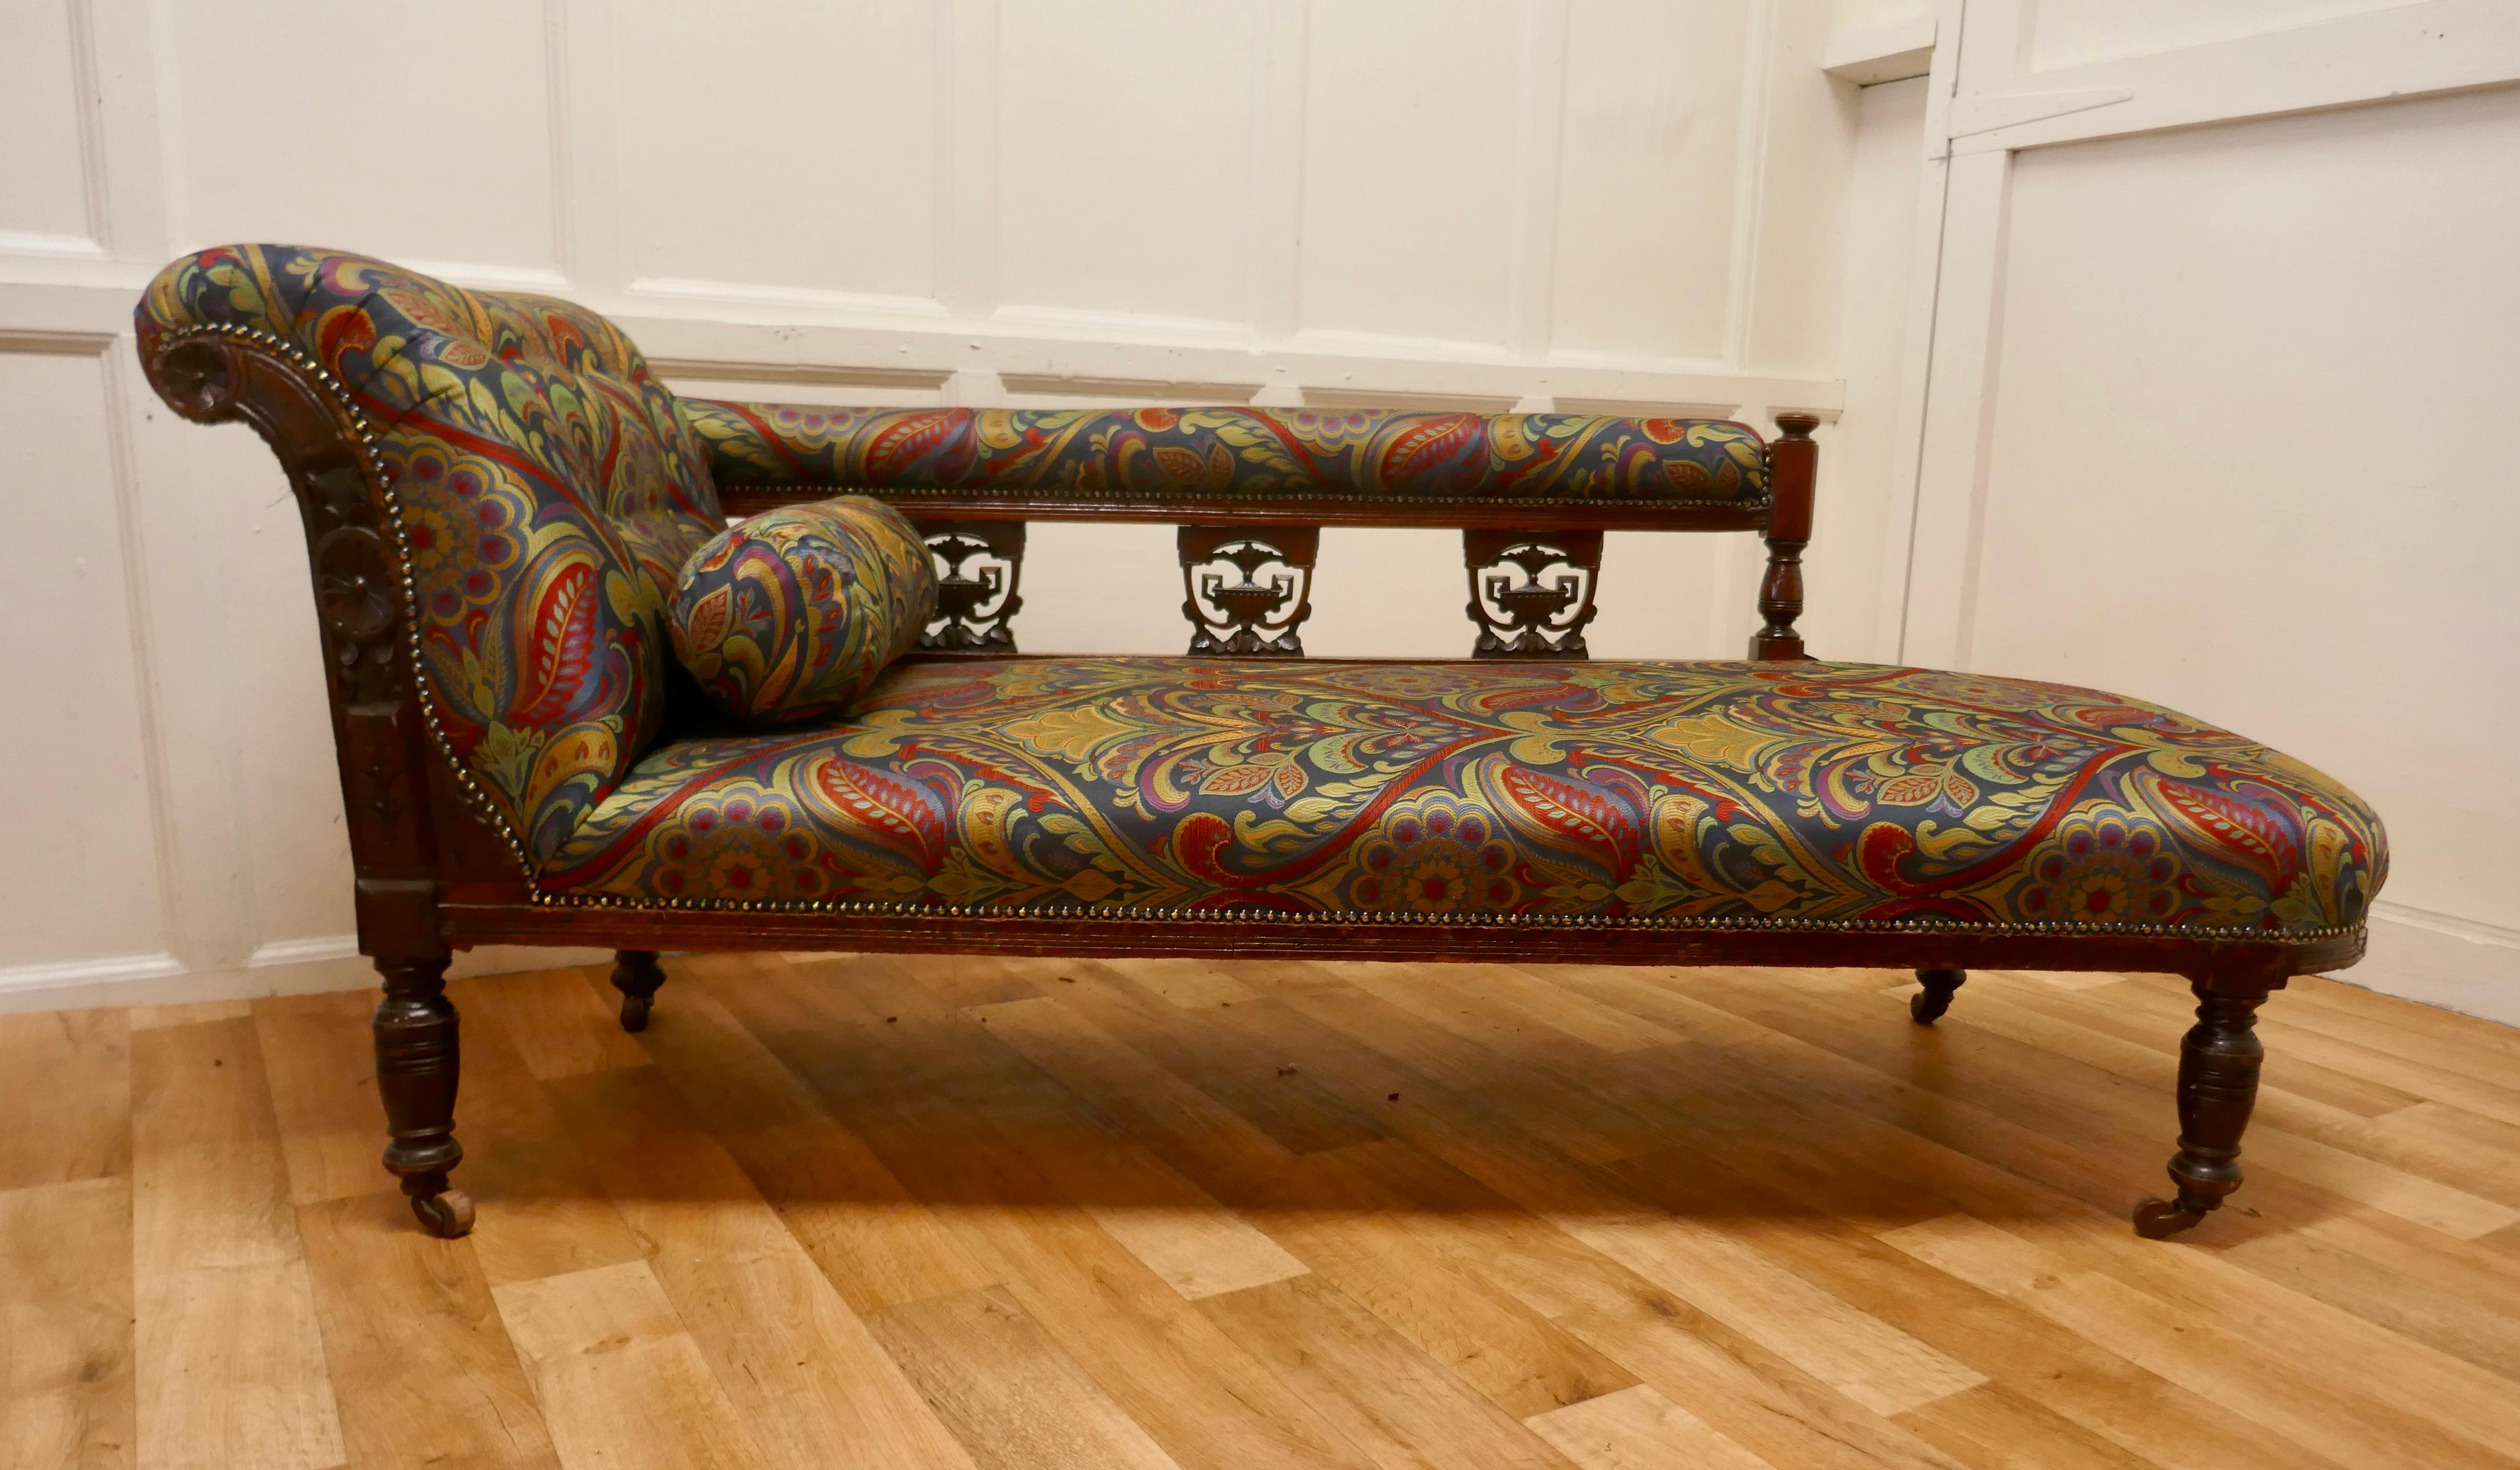 Viktorianische gepolsterte Chaiselongue im Art Nouveau-Stil.

Dies ist ein sehr attraktives Sofa wurde es neu gepolstert mit einem extra dicken Heavyweight Jacquard-Stoff, eine hervorragende Art Nouveau Design, Juwel gefärbt und das Design ist